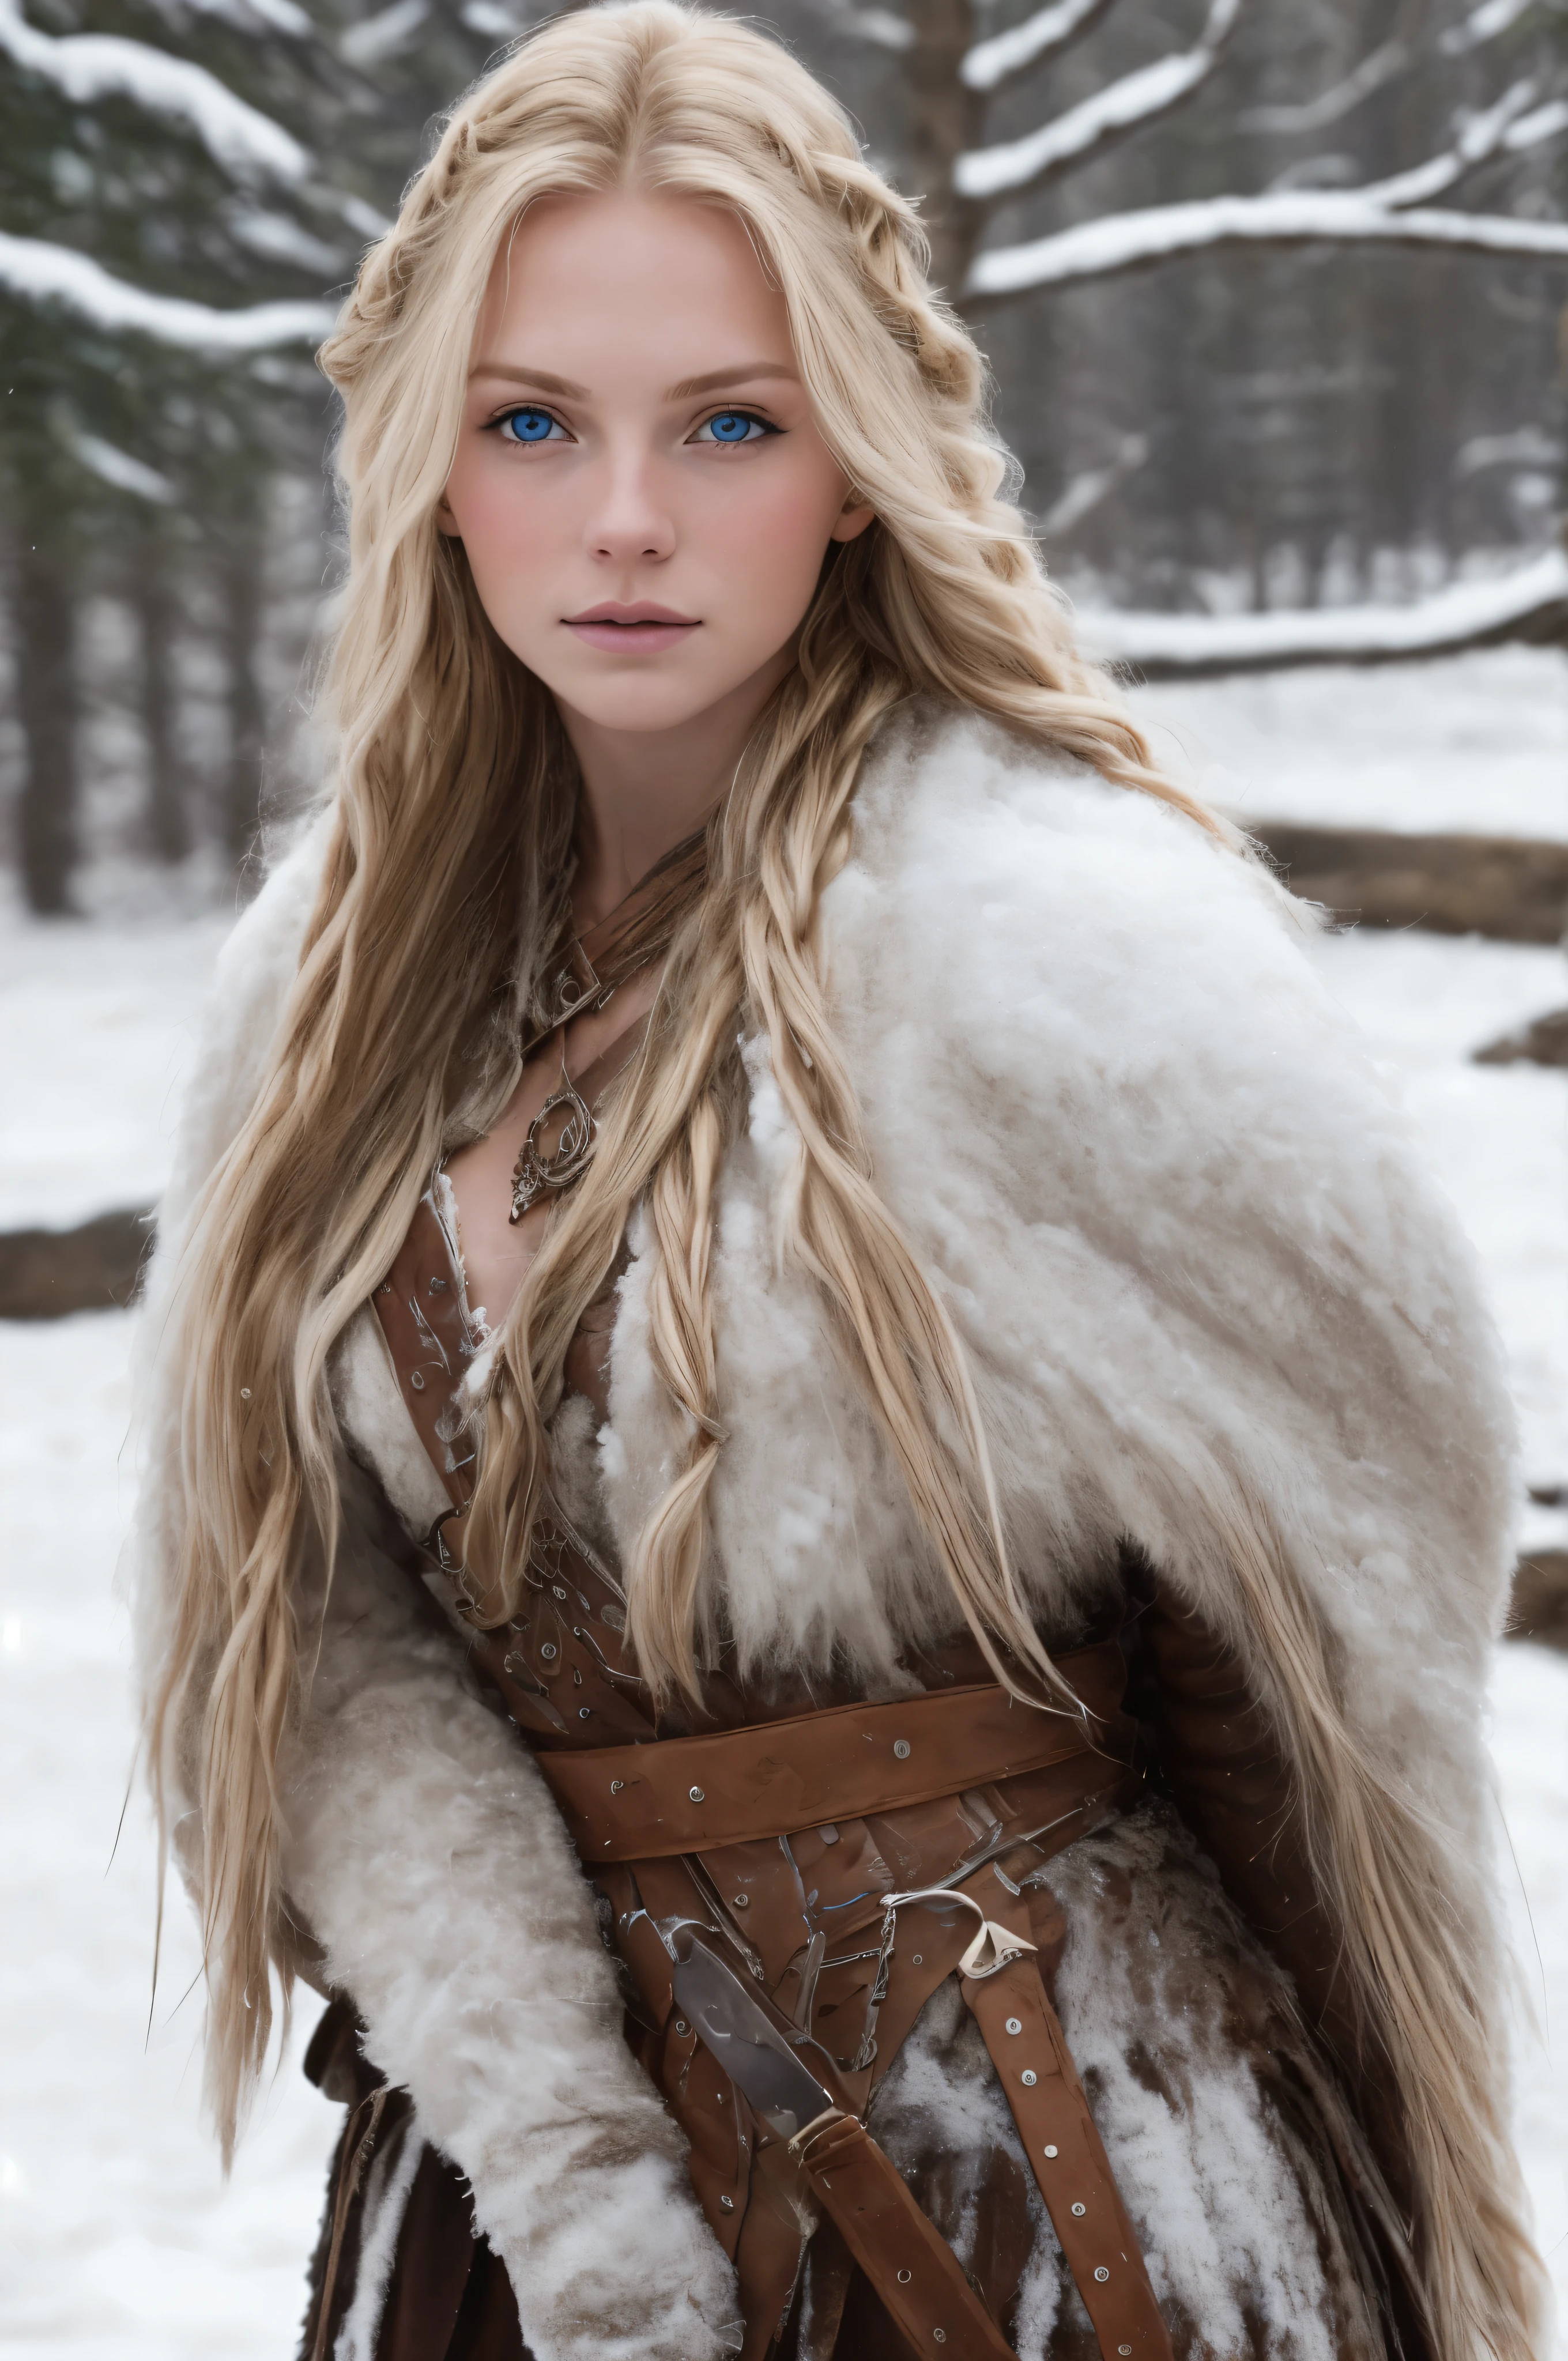 (實際的:1.2), 類比攝影風格, 斯堪的納維亞女戰士, 夢幻般的雪景, 金髮辮子, 全身, 柔和的自然光, 可愛又性感, 樂趣, 詳細的臉和藍眼睛, отличное 品質, 傑作, 細緻的北方背景, 品質: 1.6萬., 原始照片